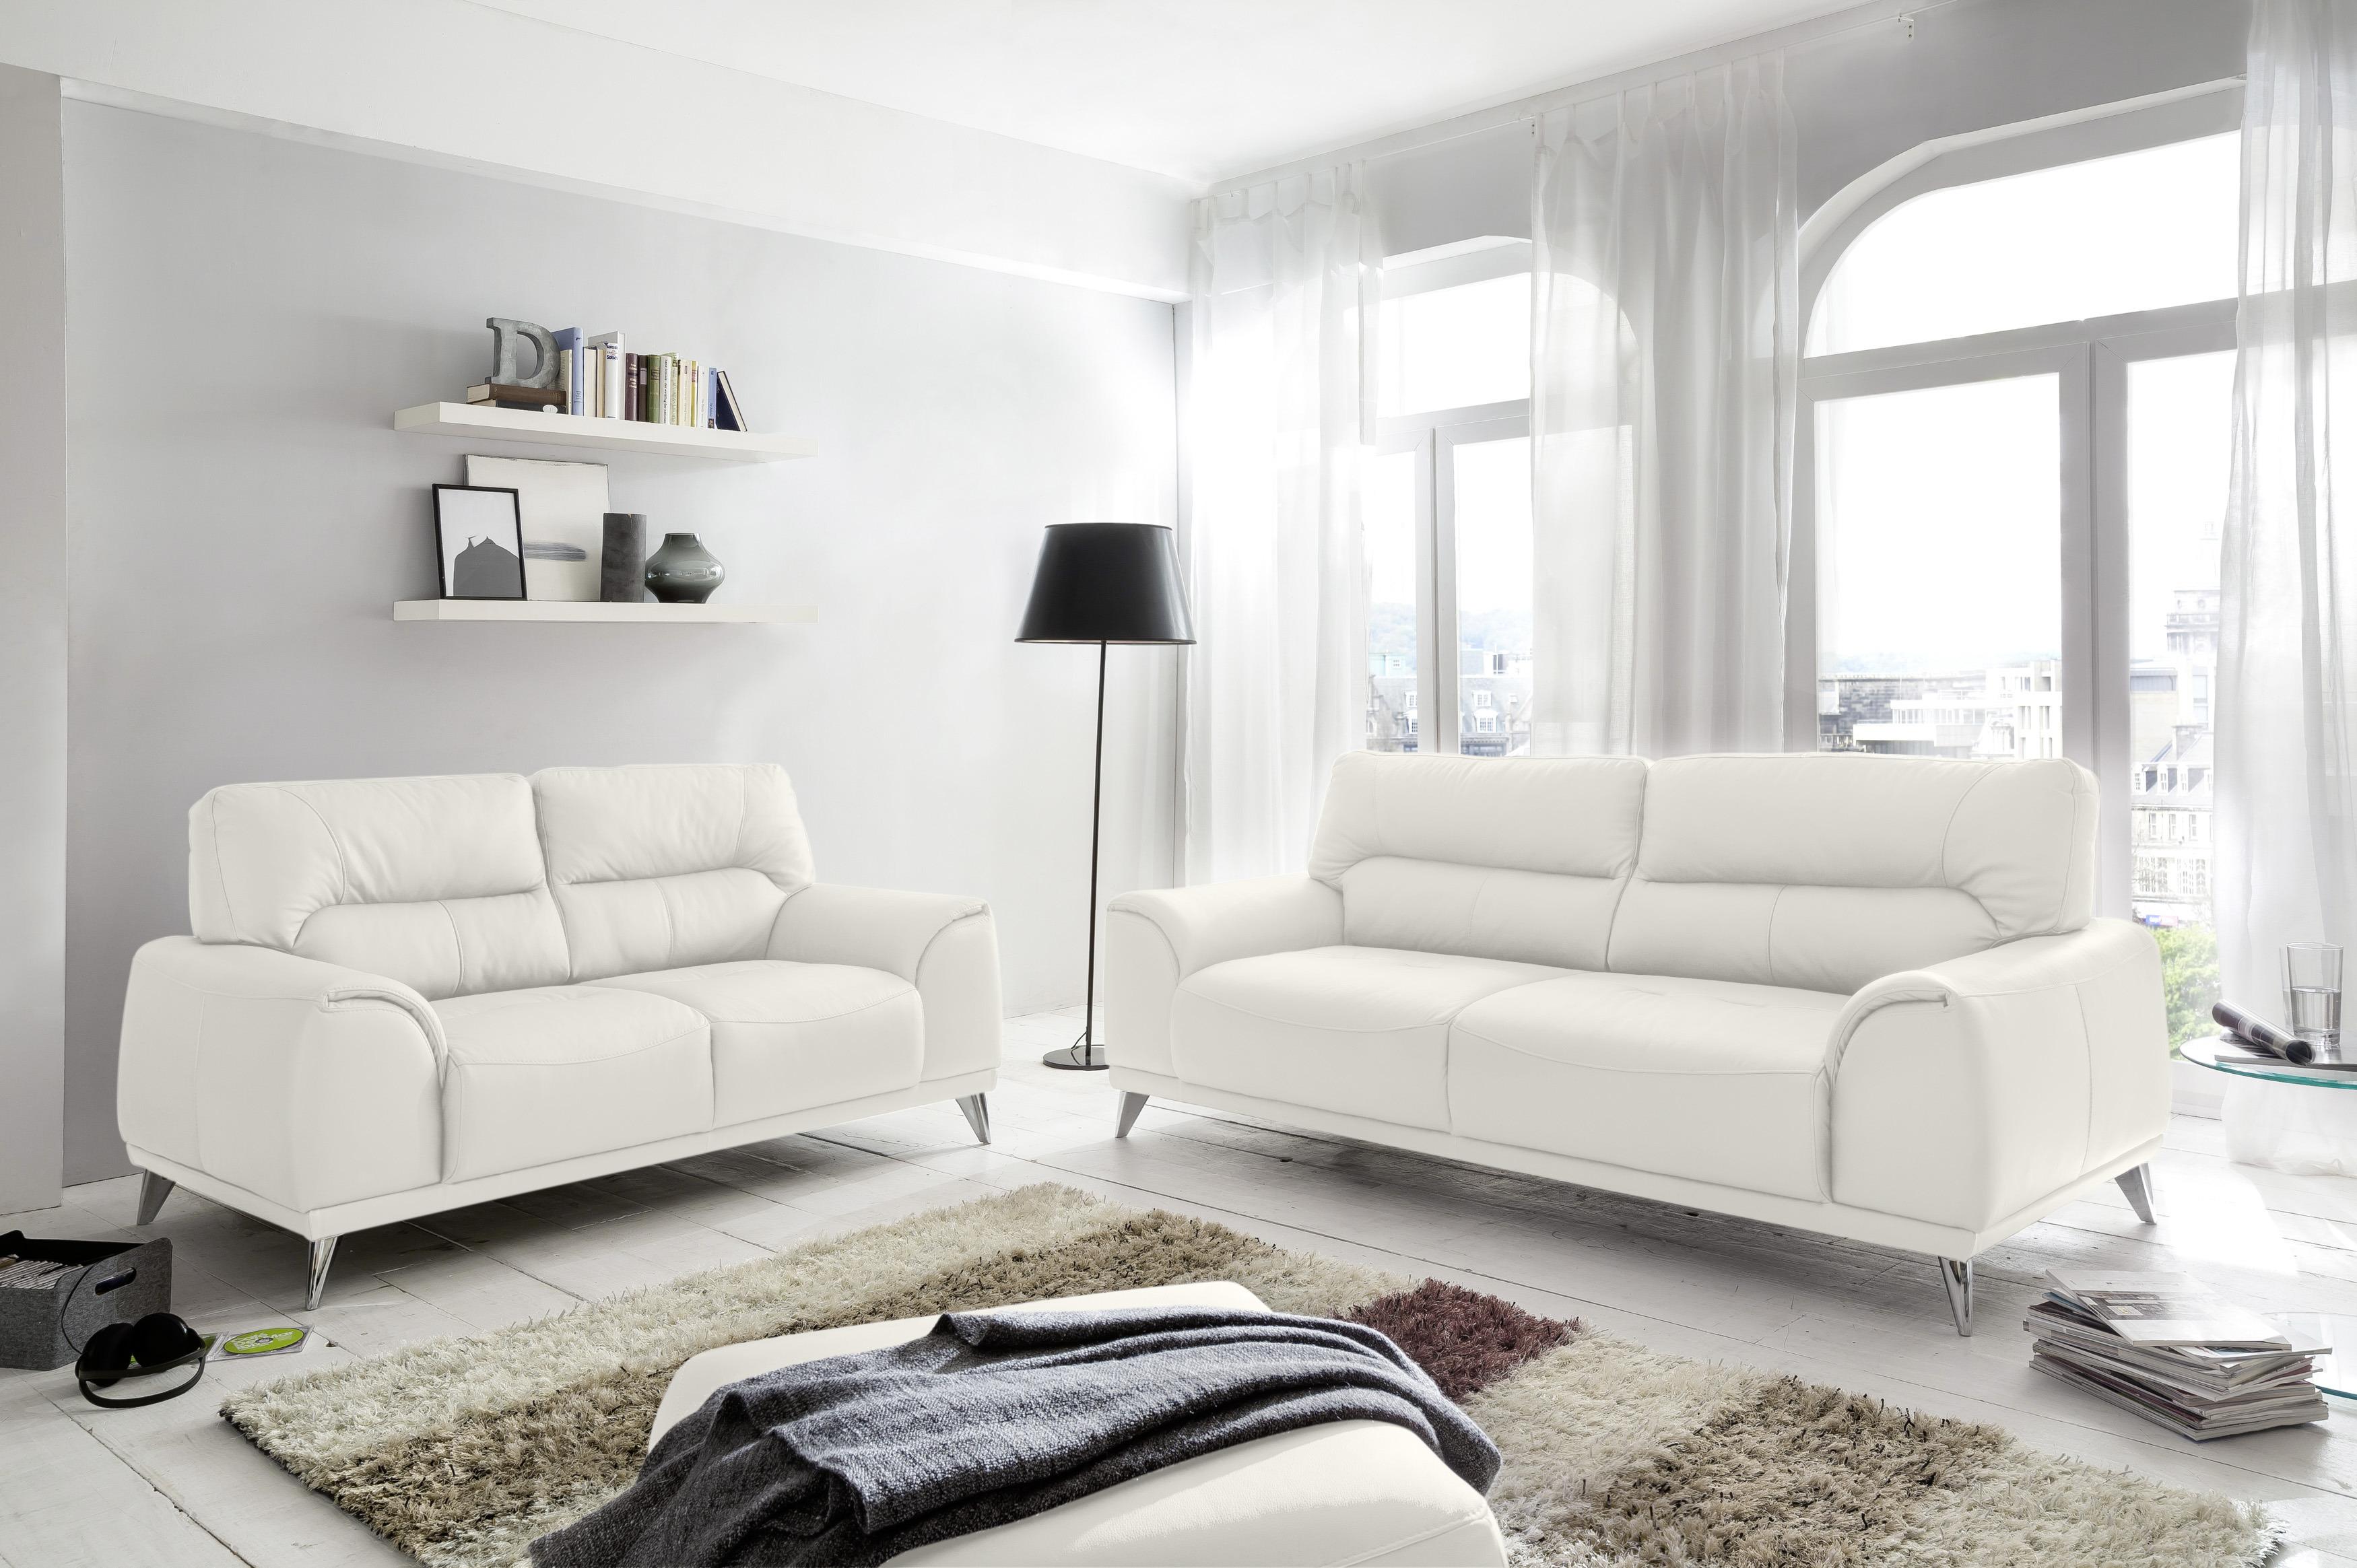 Zweisitzer-Sofa "Frisco" , weiß - Chromfarben/Weiß, MODERN, Textil/Metall (166/92/96cm) - MID.YOU